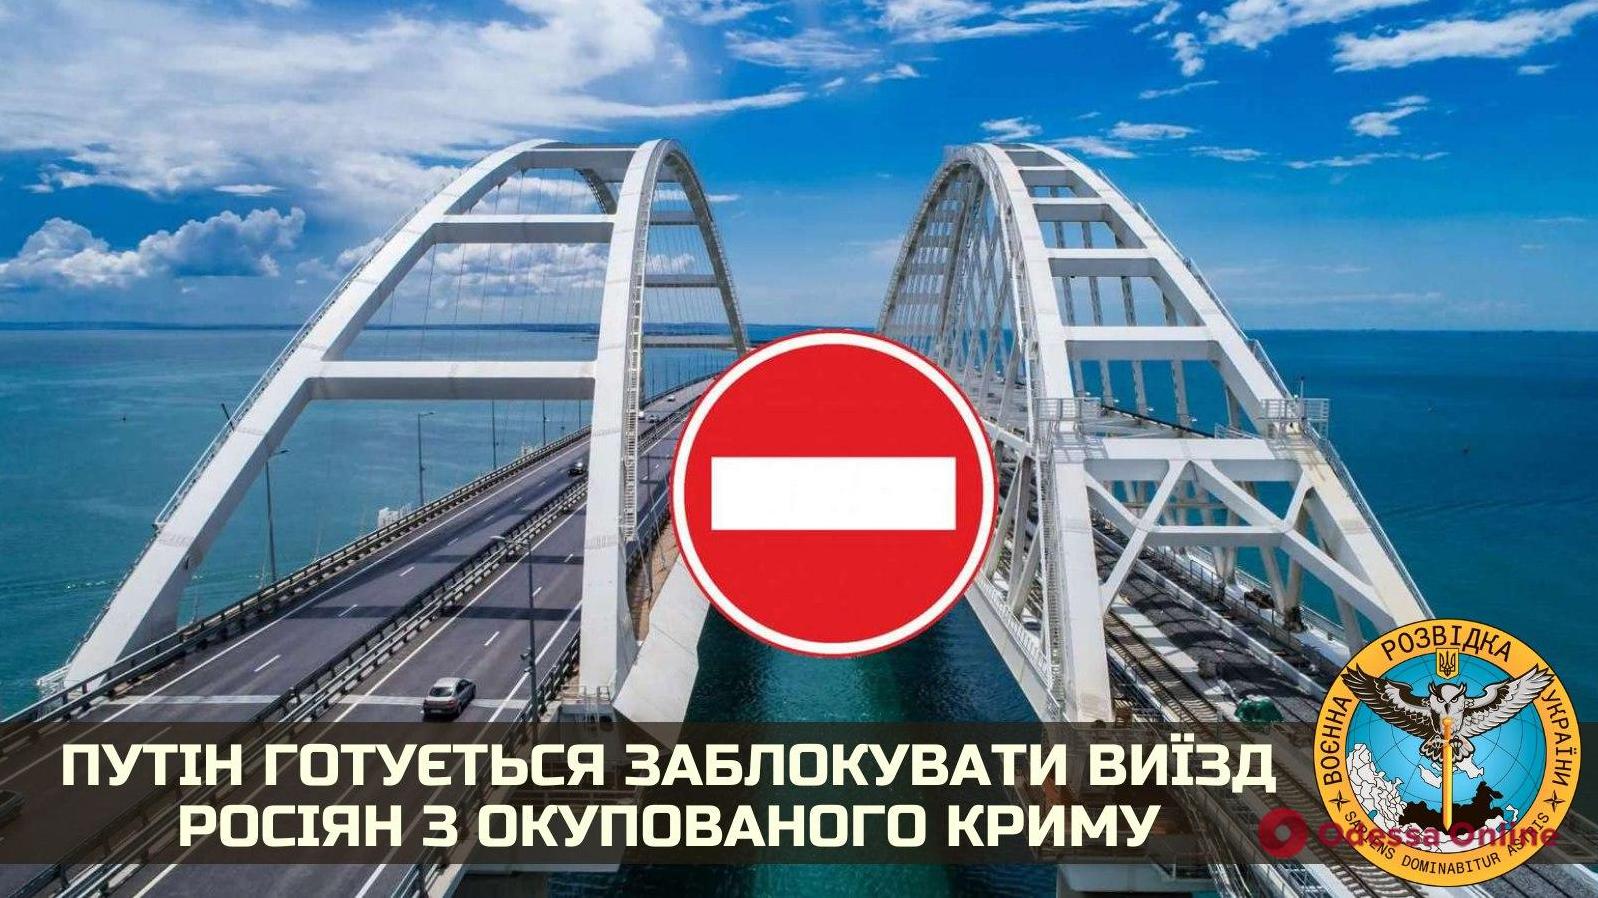 Стаття Путин готовится перекрыть Керченский мост: 600 тысяч человек окажутся в заложниках Ранкове місто. Одеса